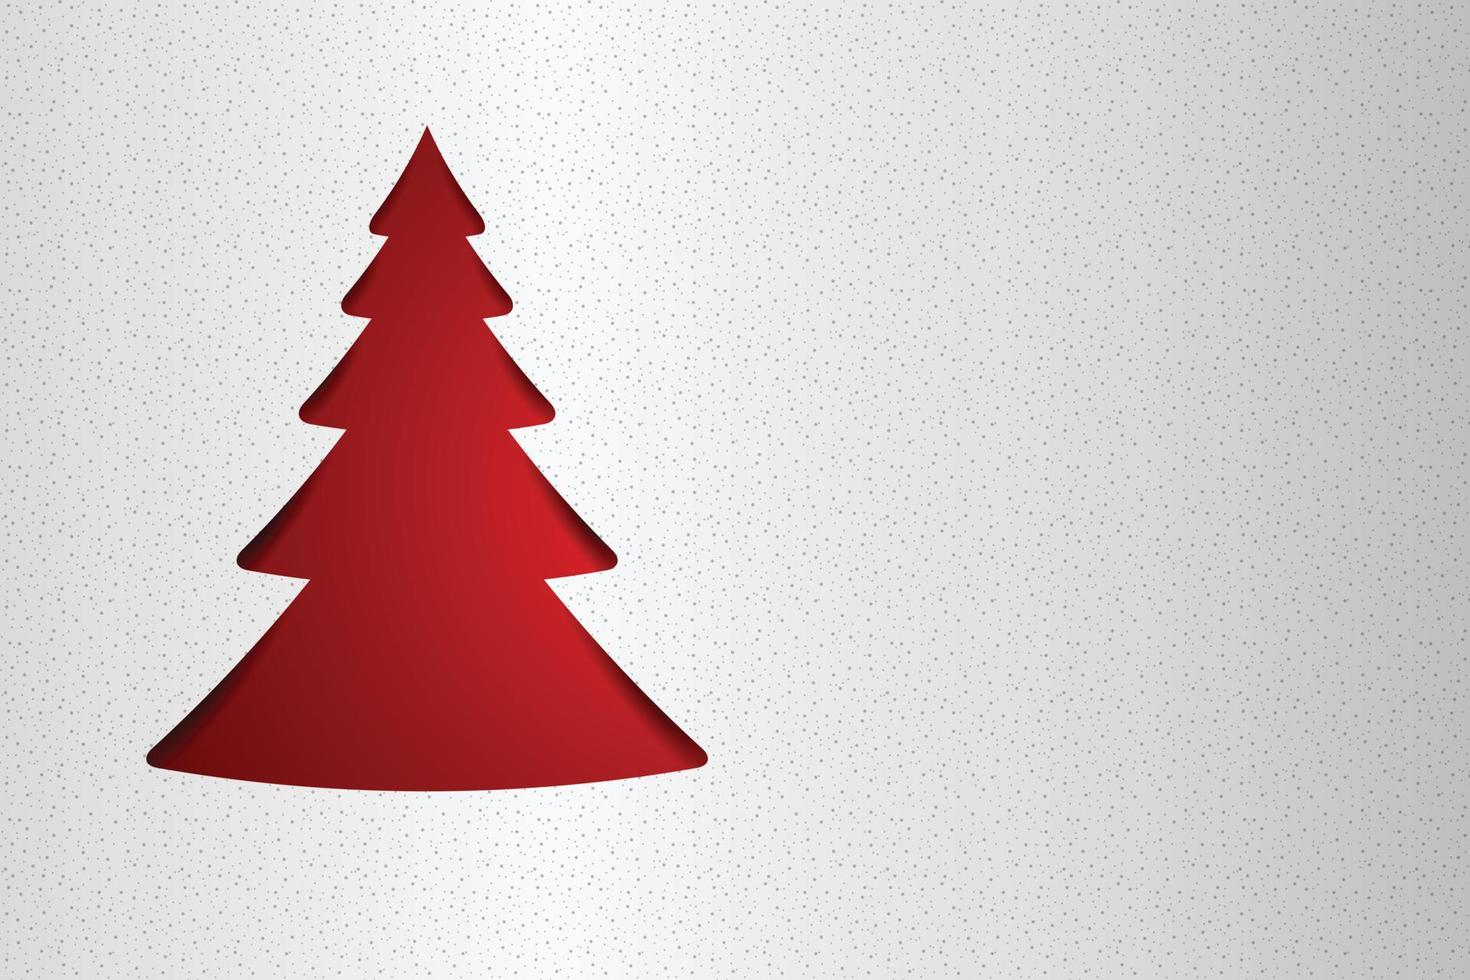 Frohe Weihnachten Papierbaum-Design-Grußkarte. vektor